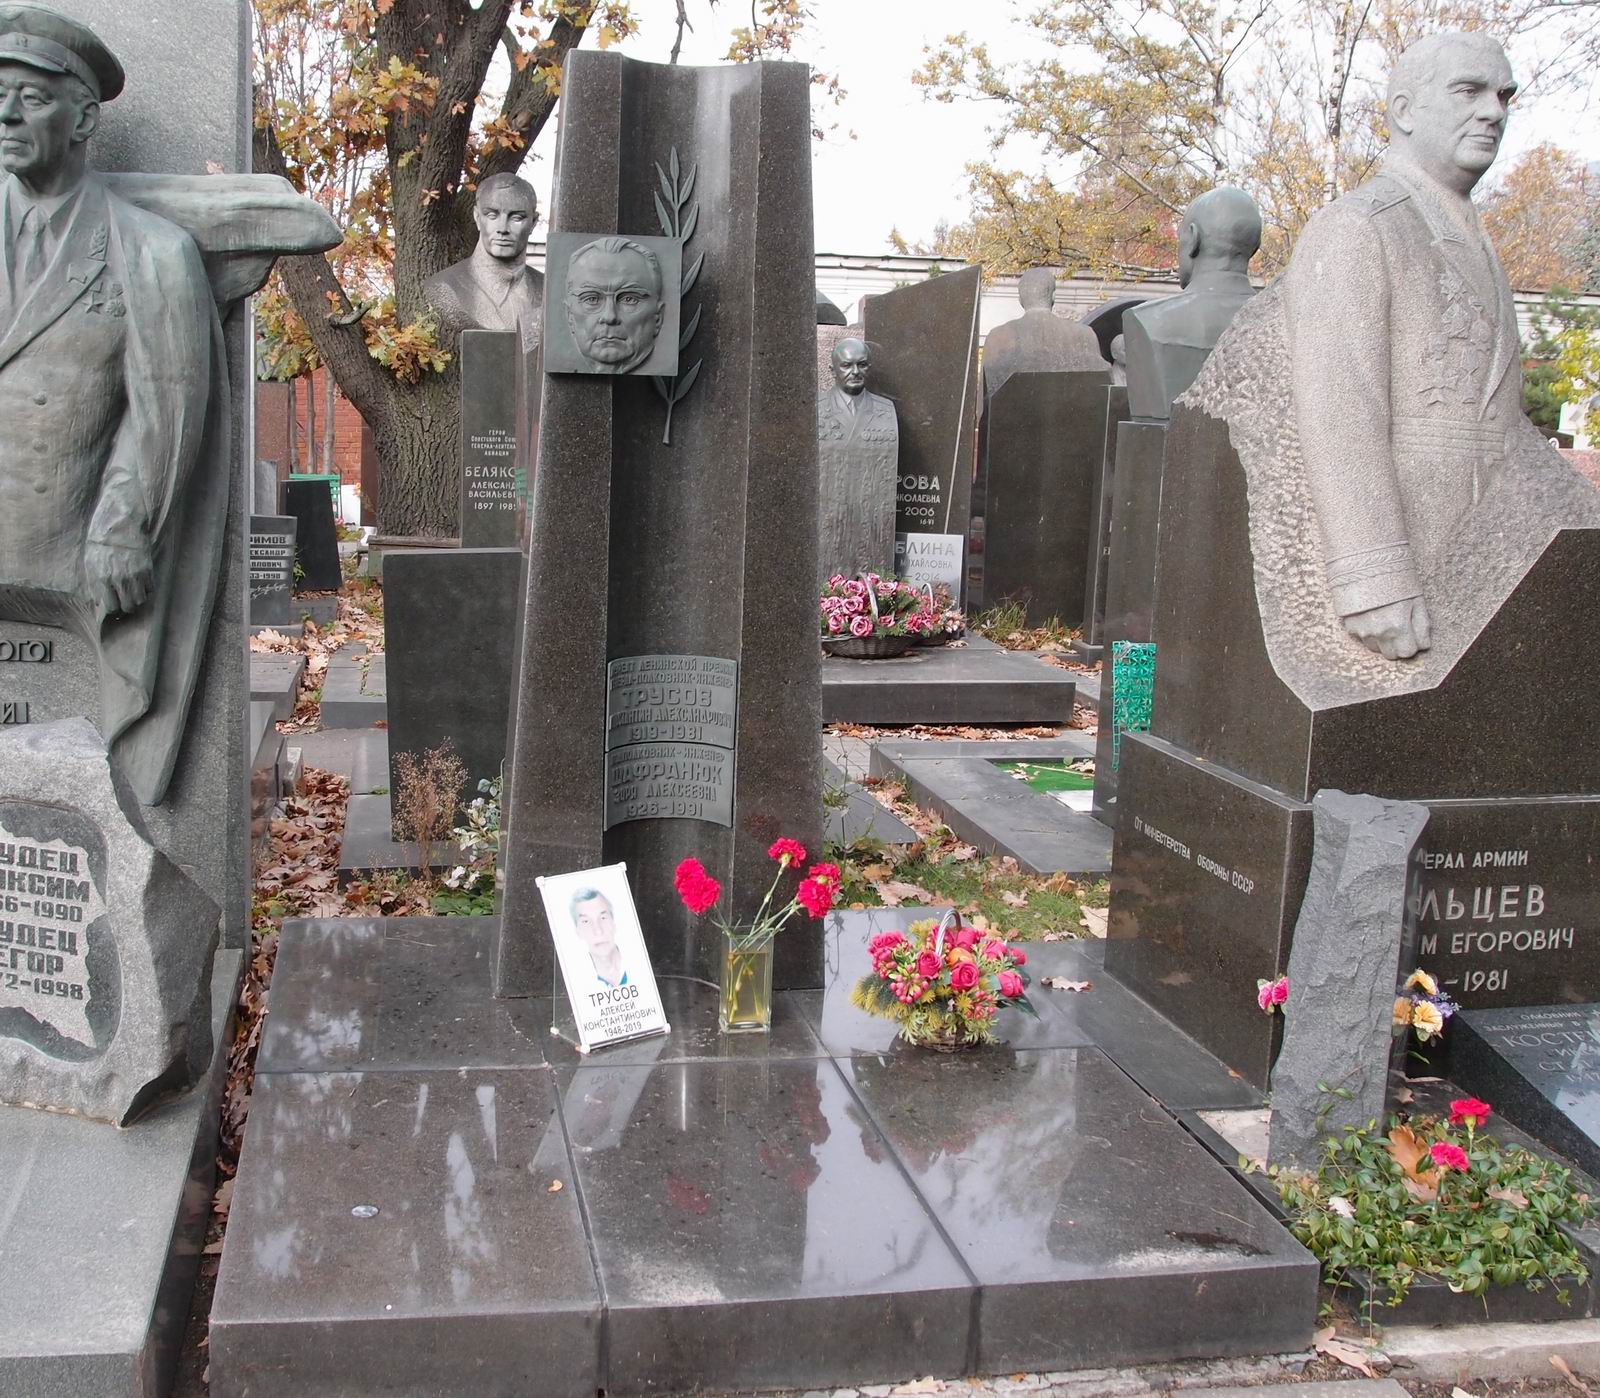 Памятник на могиле Трусова К.А. (1919–1981), ск. А.Врубель, арх. Е.Ефремов, на Новодевичьем кладбище (7–17–16). Нажмите левую кнопку мыши чтобы увидеть фрагмент памятника.